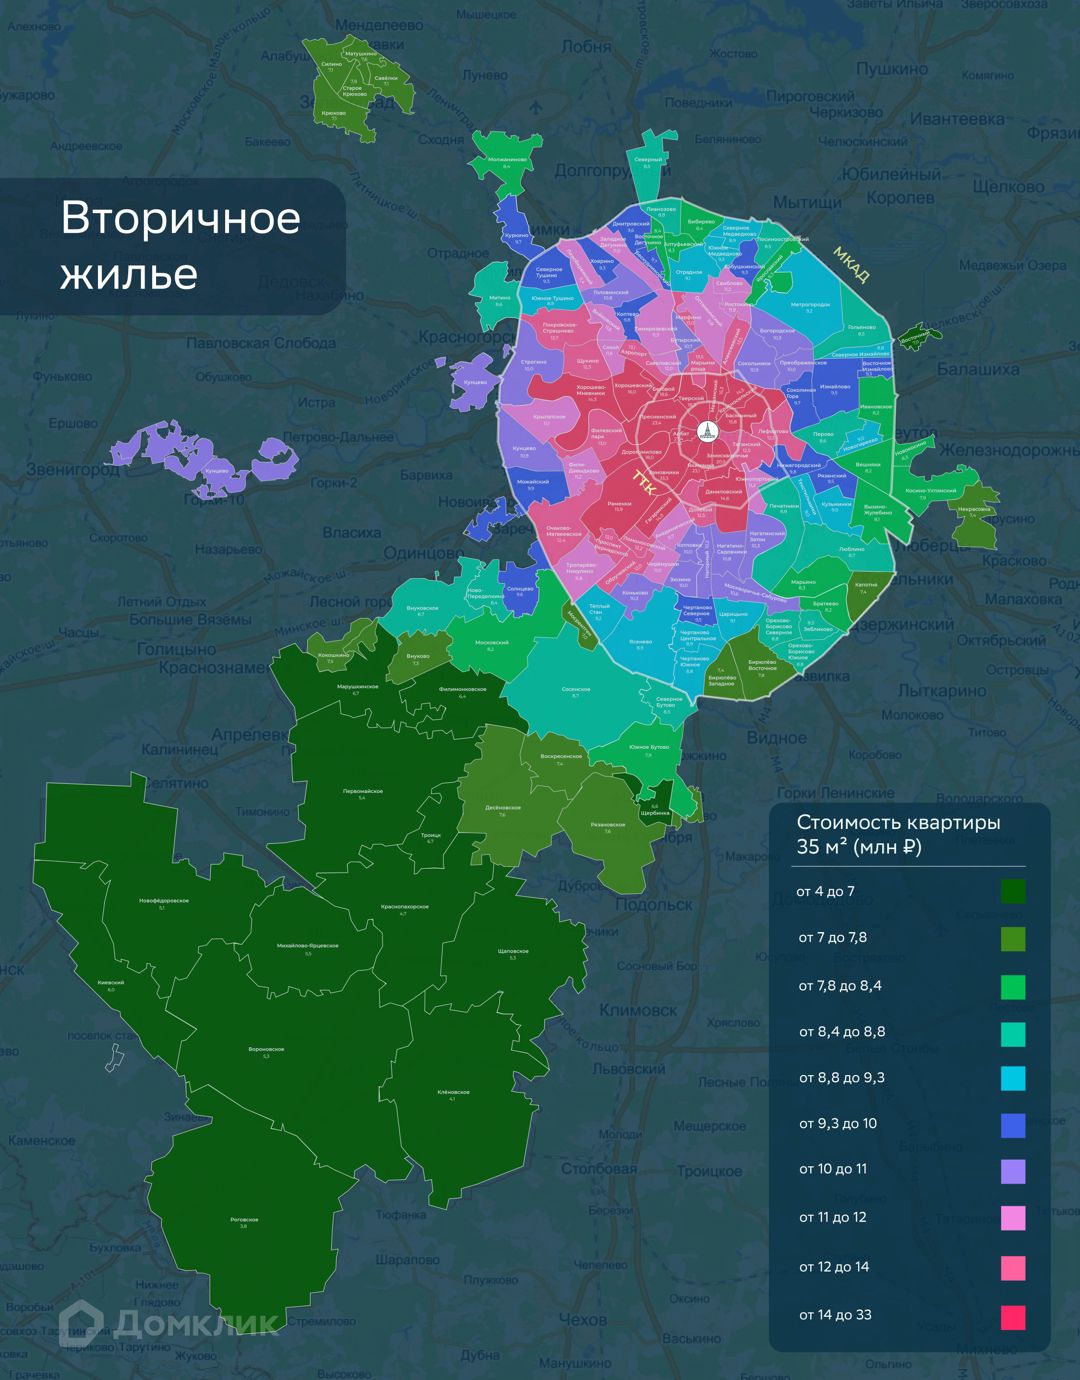 Аналитики Домклик исследовали московский рынок и составили карту стоимости первичного и вторичного жилья №1